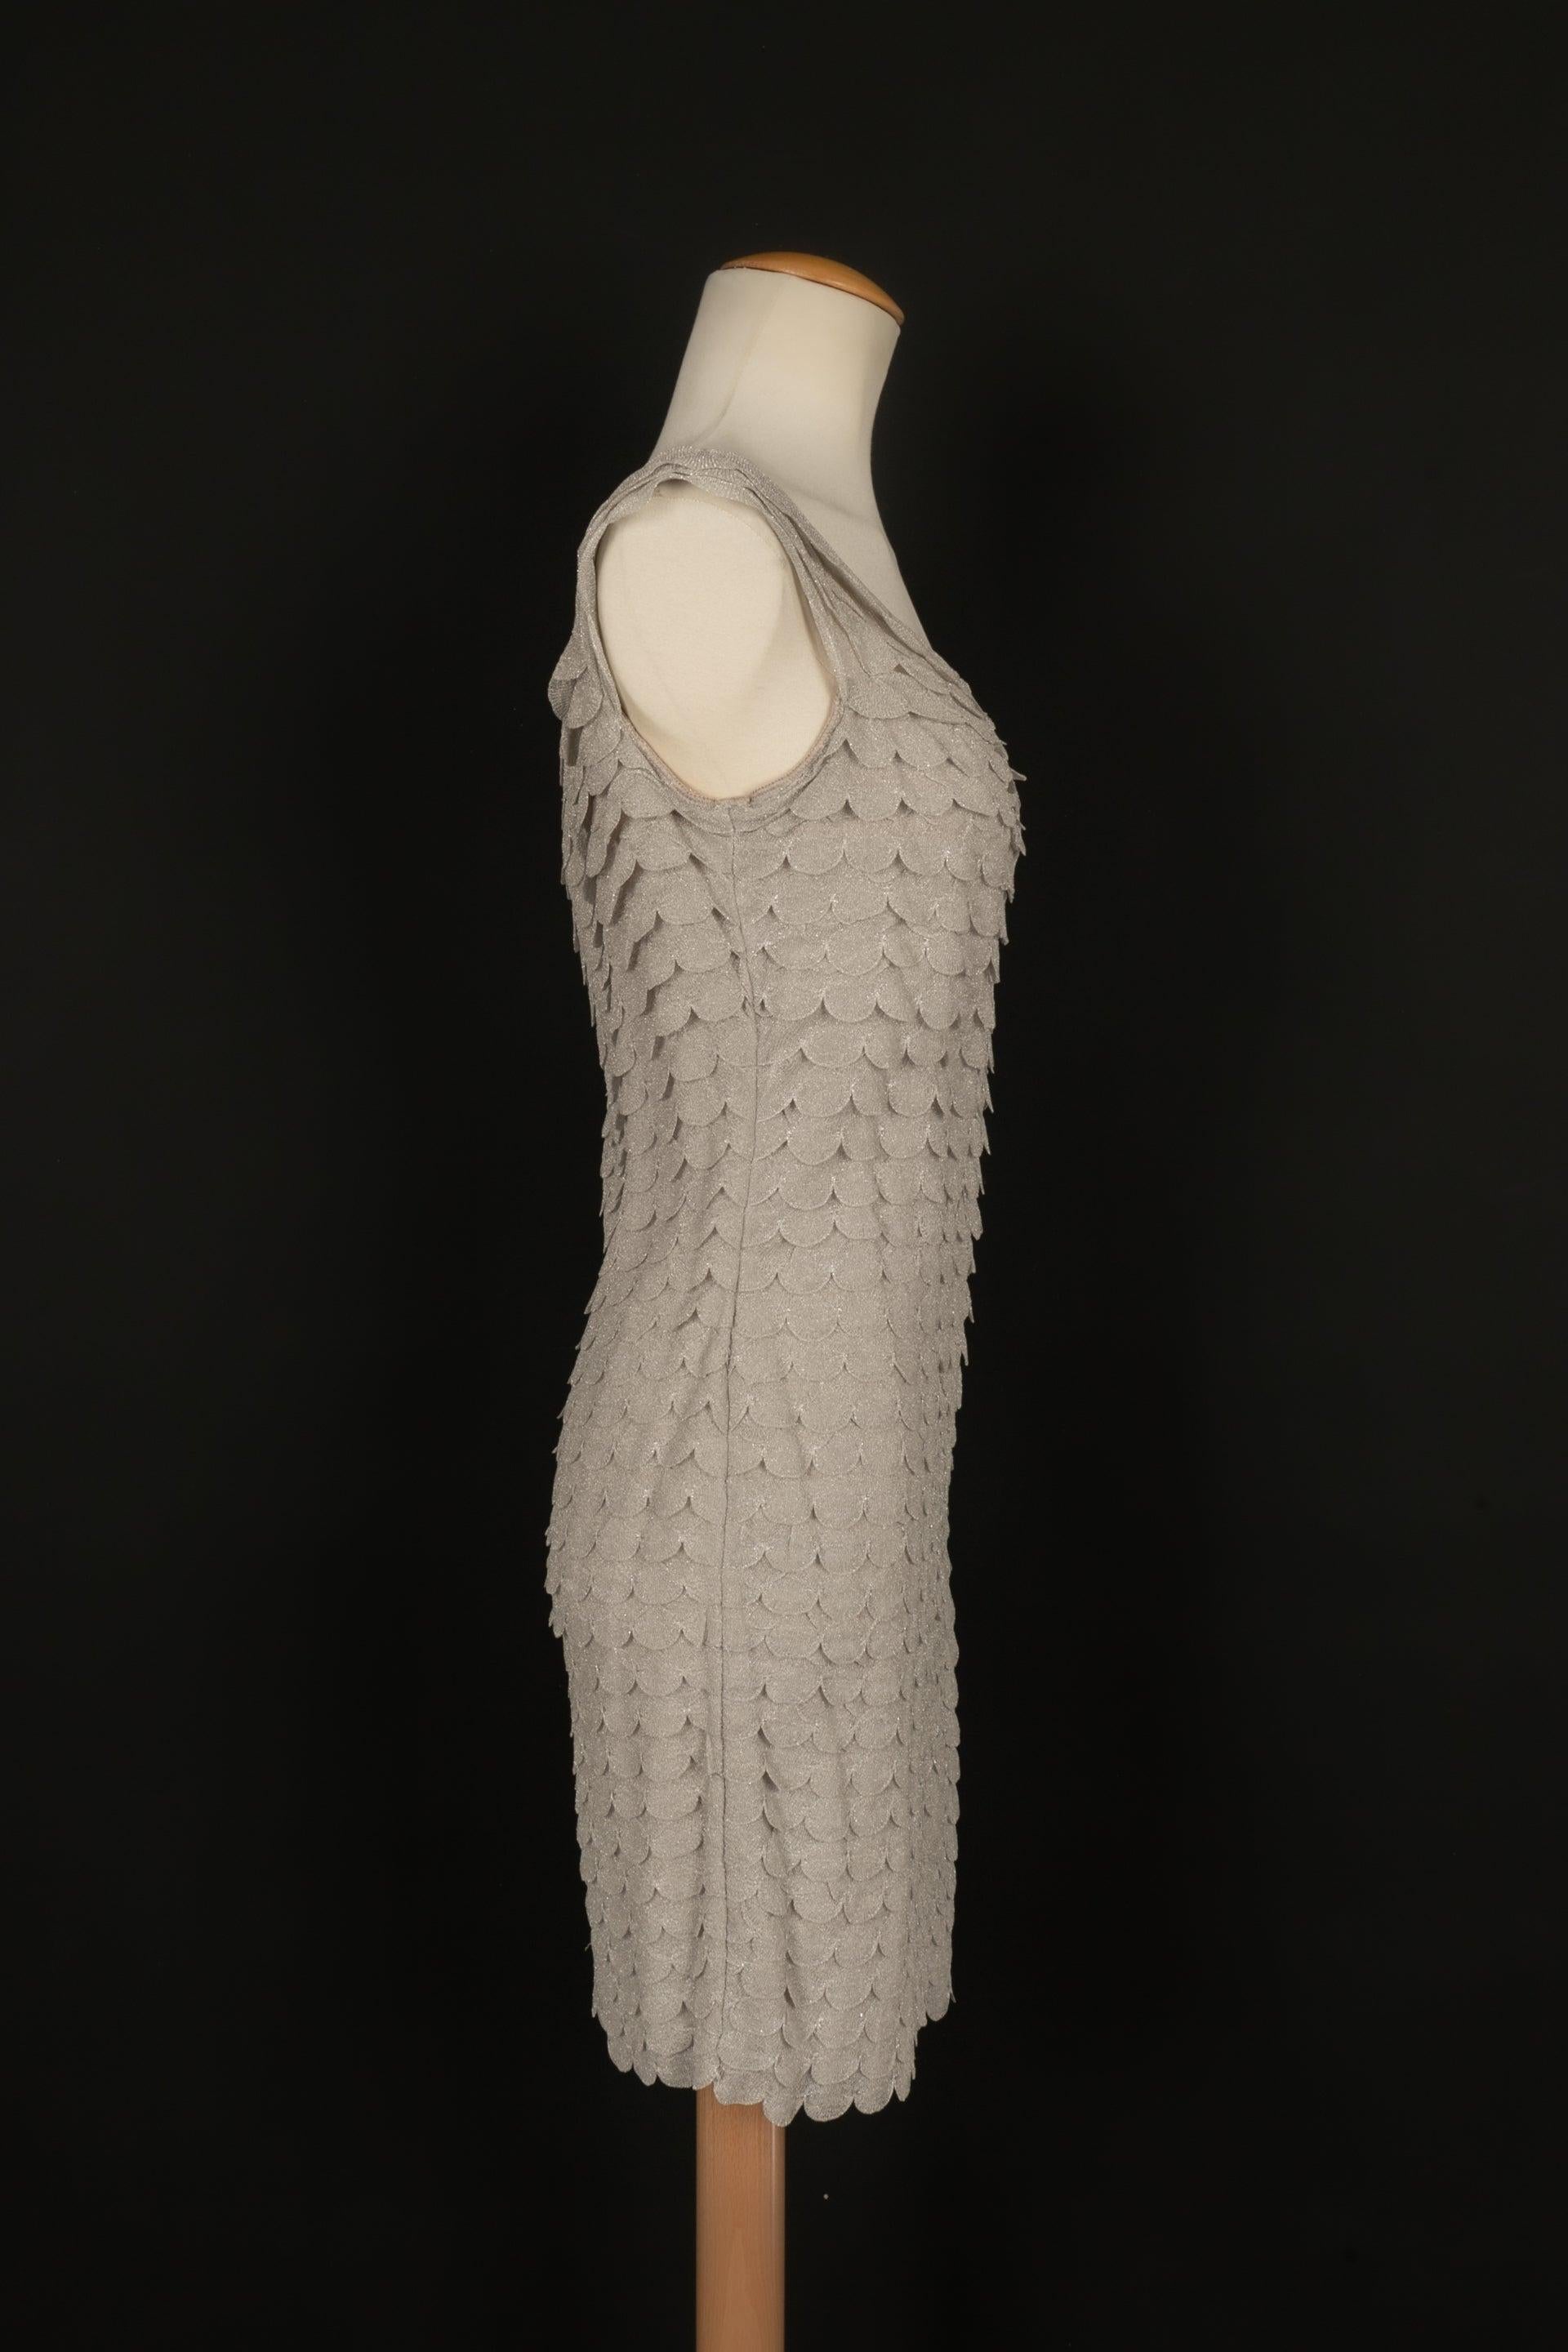 Dior - (Made in France) Kurzes, ärmelloses Kleid aus silbernem Lurexgarn. Angegebene Größe 40FR.

Zusätzliche Informationen:
Zustand: Sehr guter Zustand
Abmessungen: Brustkorb: 43 cm - 
Taille: 36 cm - 
Hüften: 44 cm - 
Länge: 87 cm

Referenz des